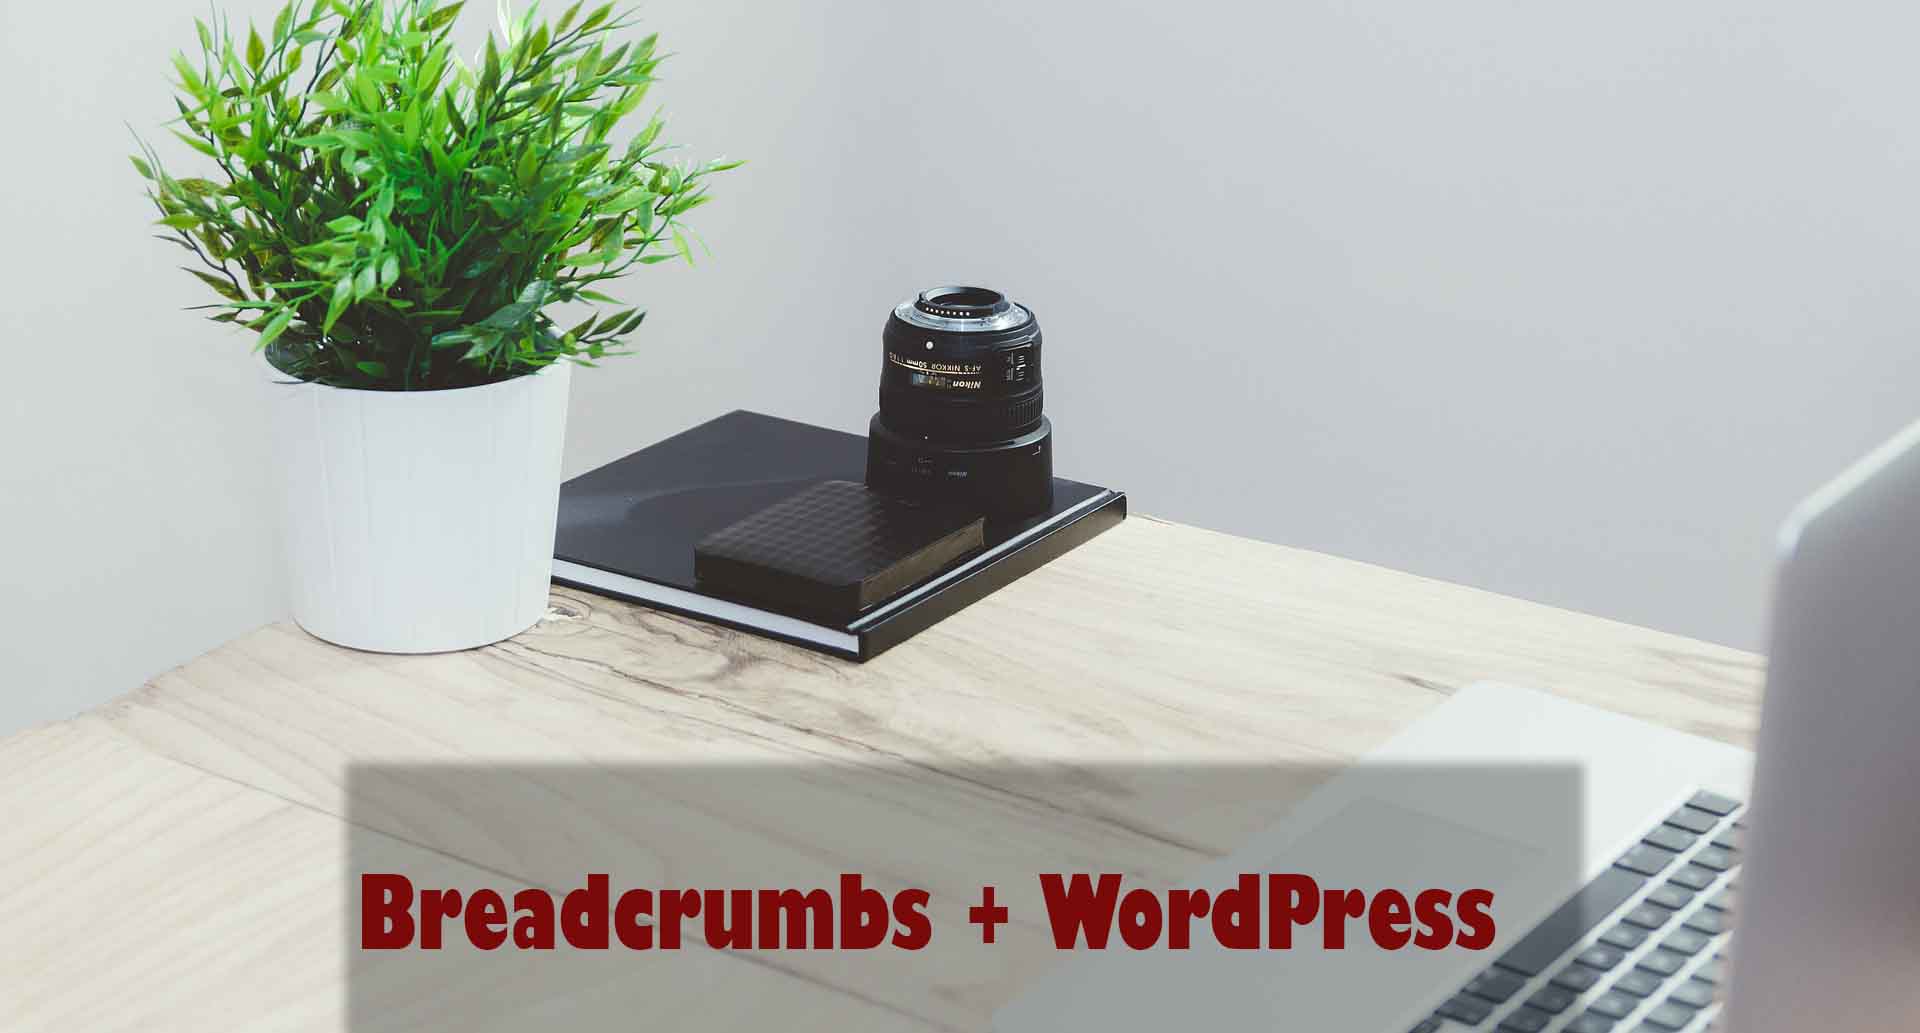 Enabling beadcrumbs in WordPress